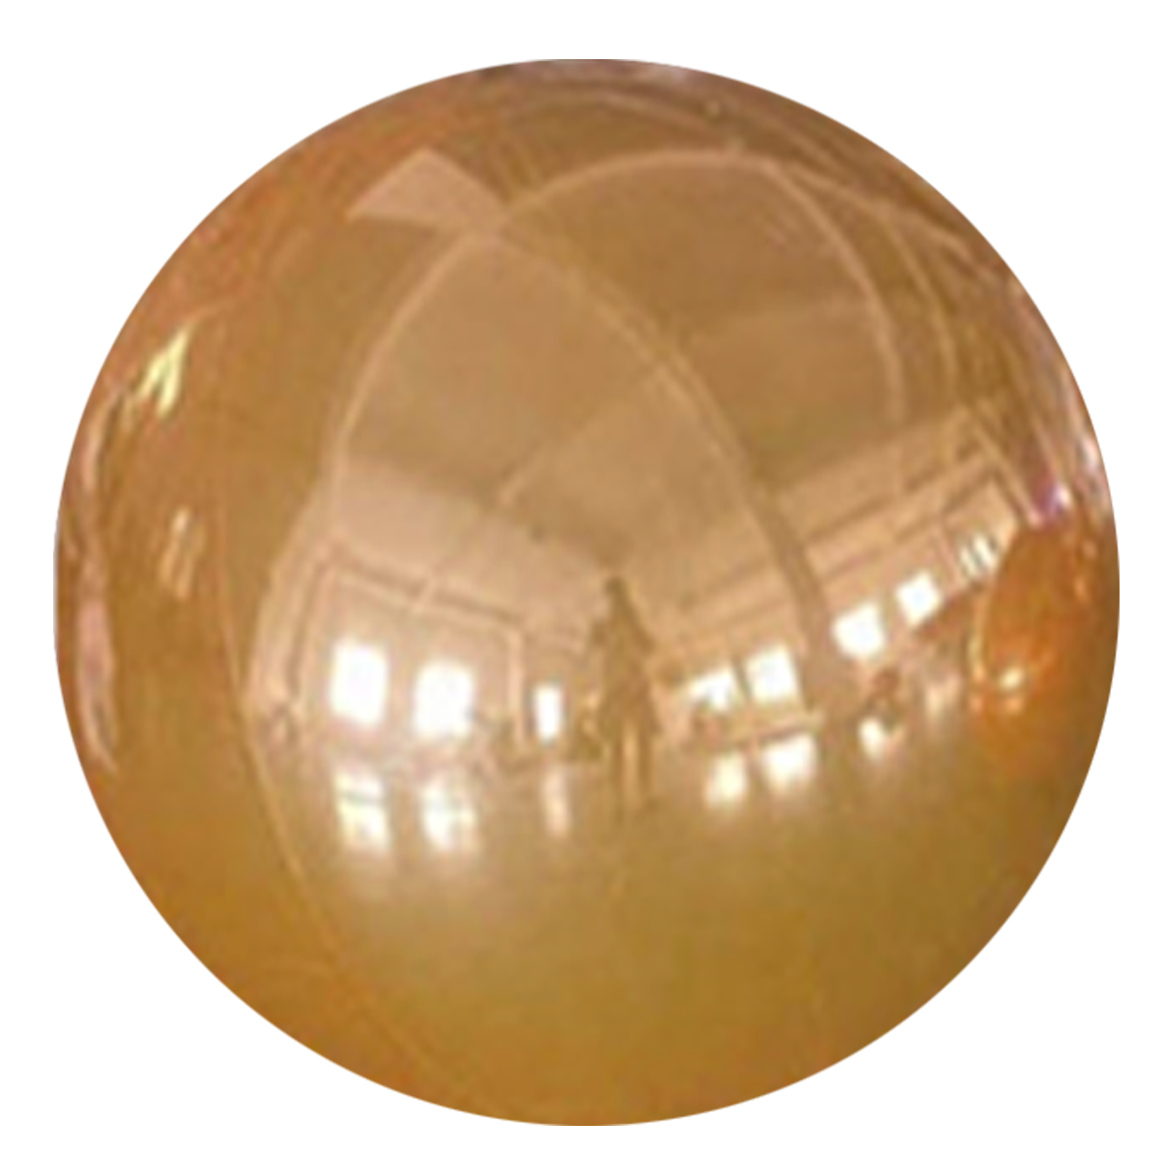 Buy Inflatable 50 centimeters Shiny Round Orange Sphere